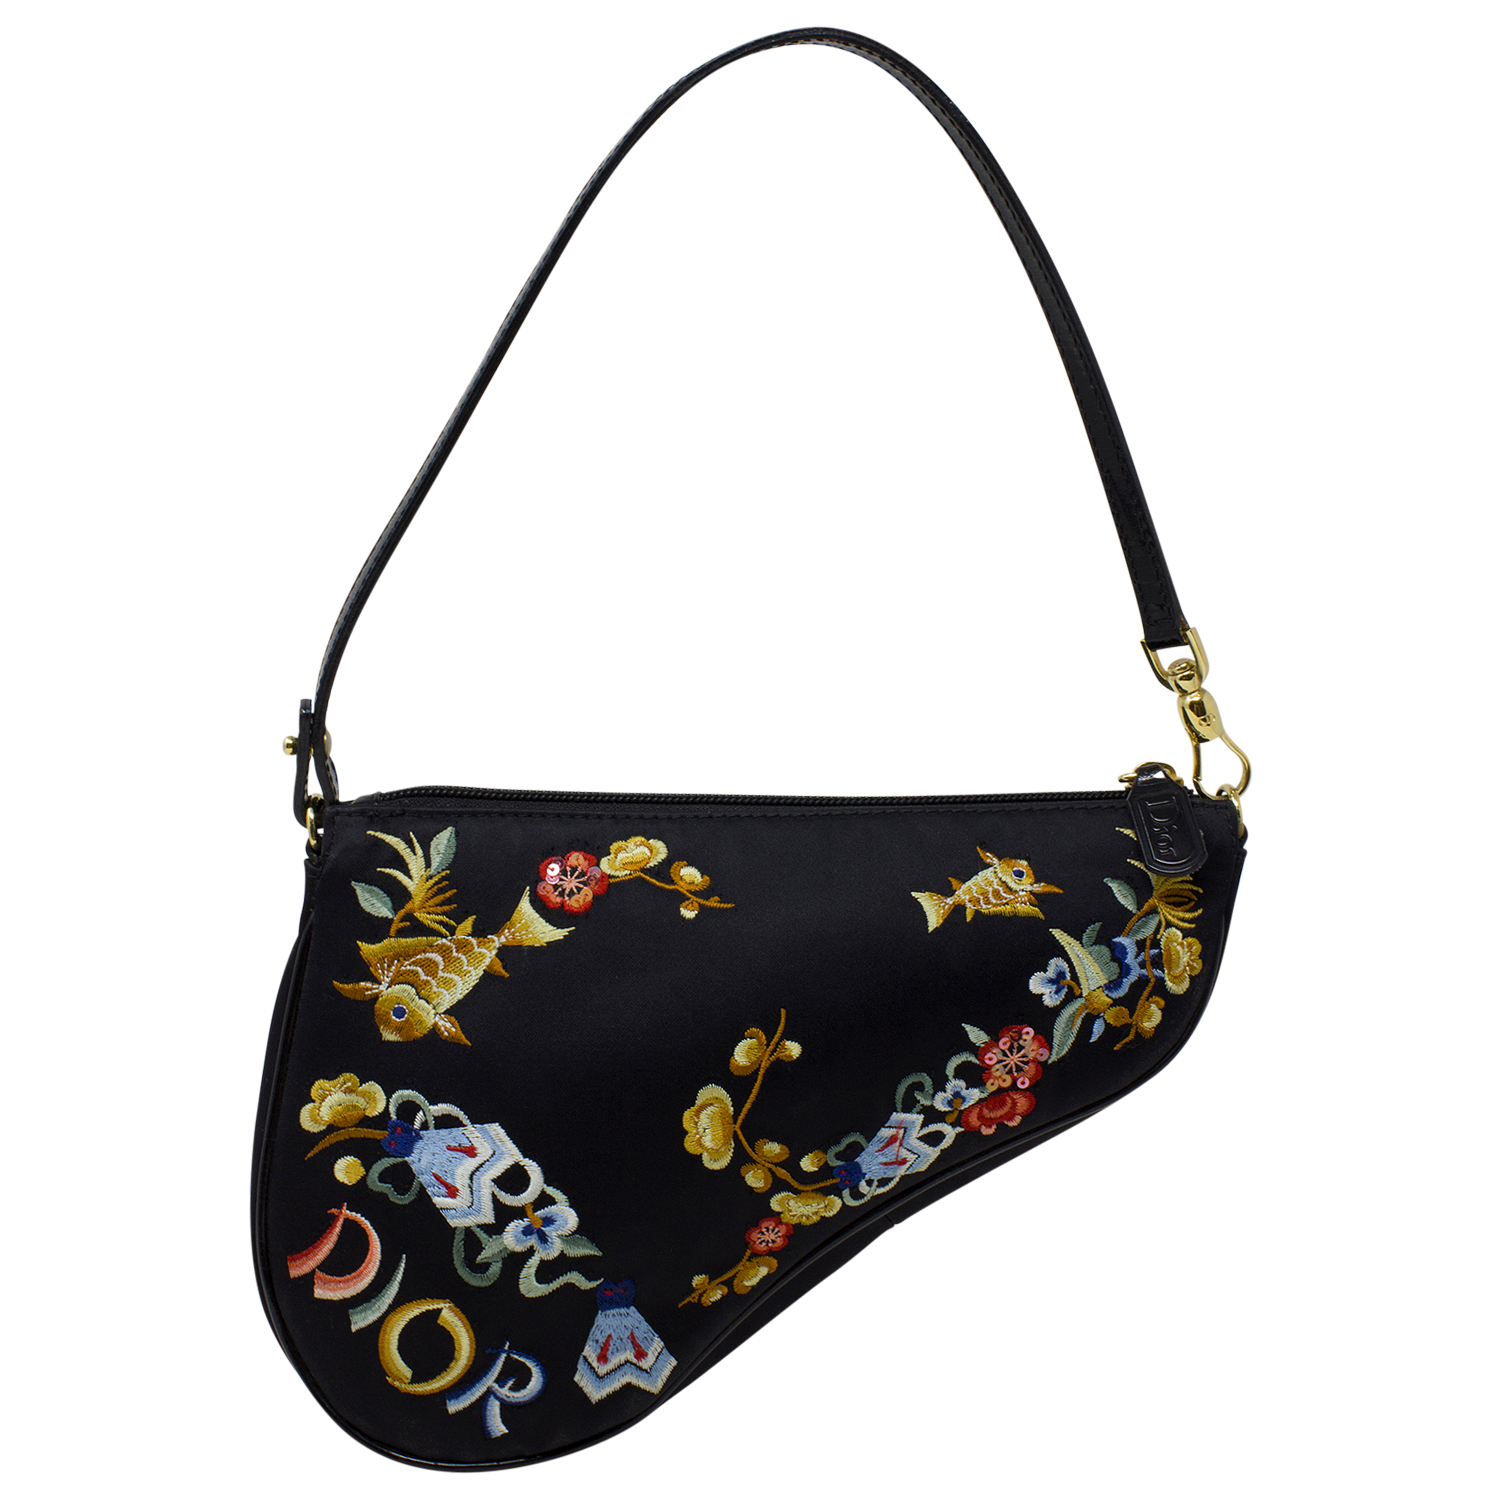 Christian Dior Saddle Bag Review  I got a vintage Saddle Bag for $200!